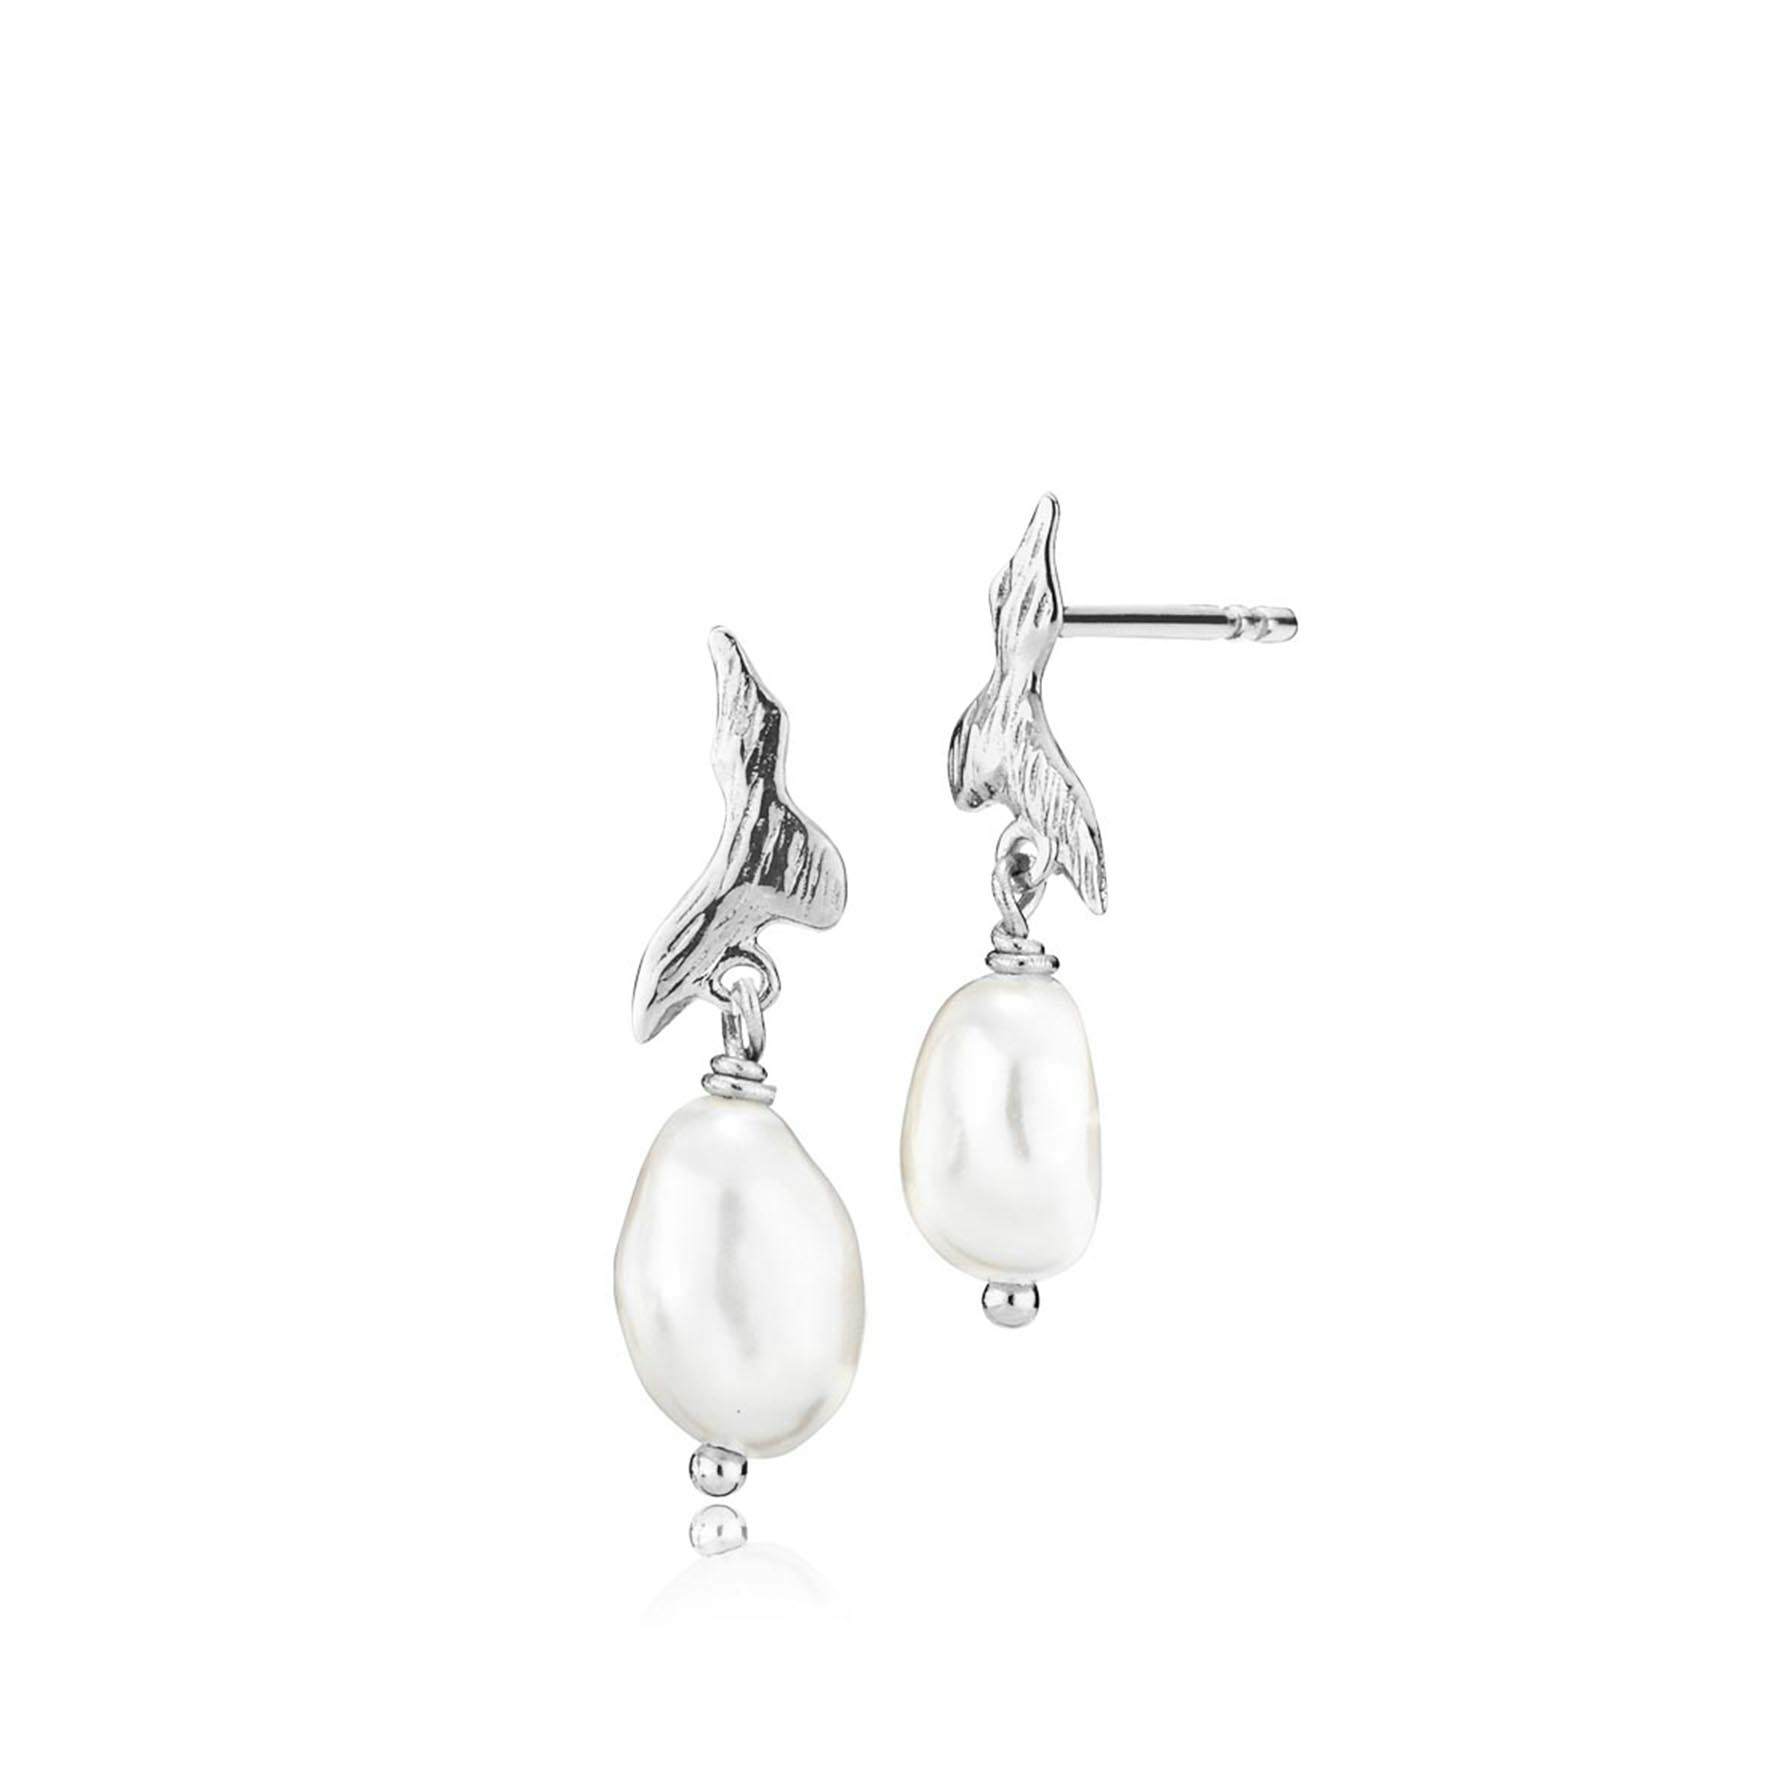 Fairy Earrings With Pearl fra Izabel Camille i Sølv Sterling 925